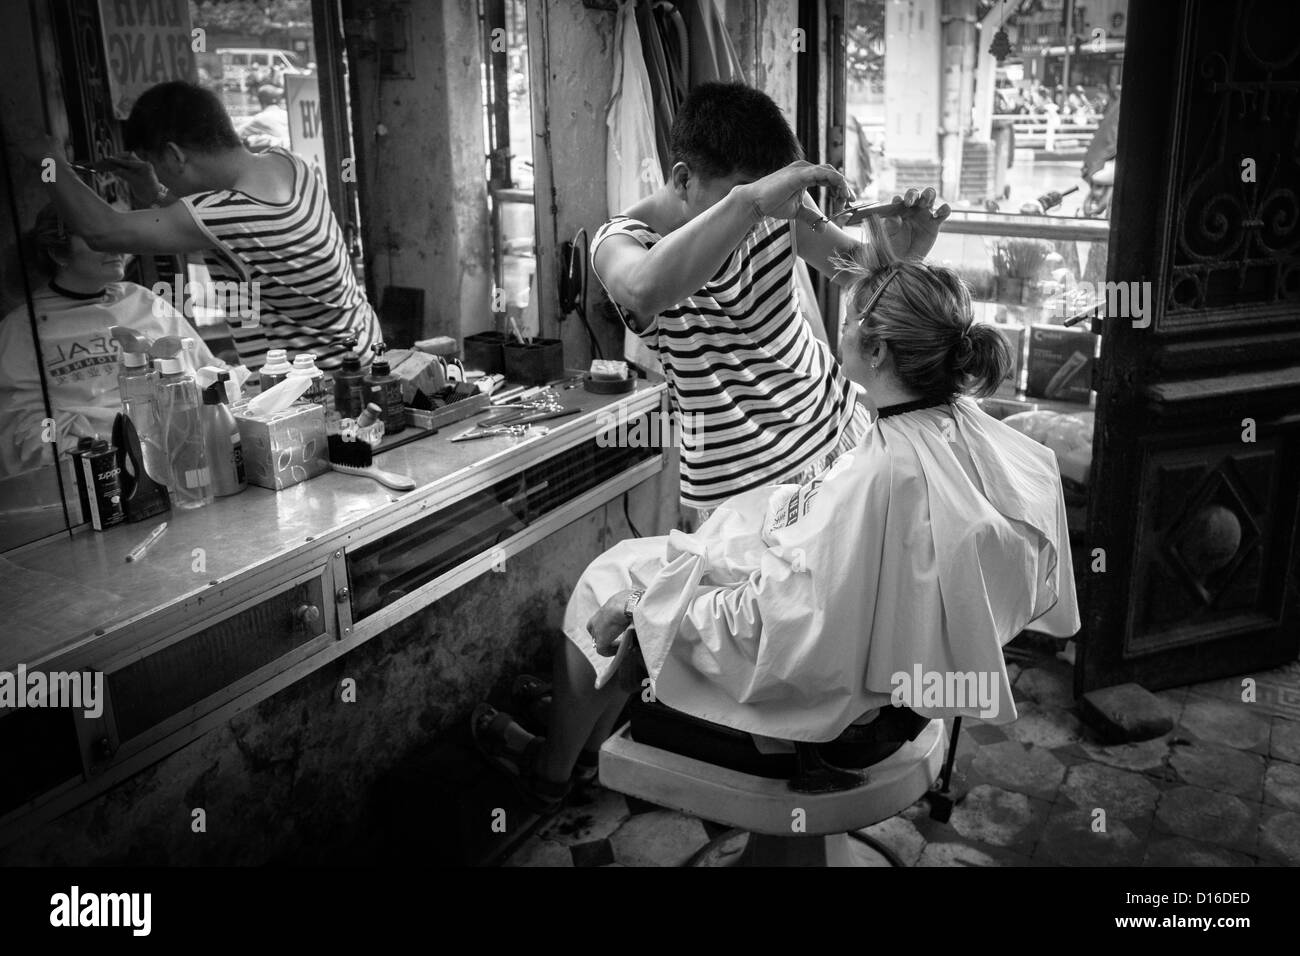 Voyageuses ayant fait couper les cheveux dans une rue arrière coiffeurs vietnamiens dans la vieille ville d'Hanoi. Banque D'Images